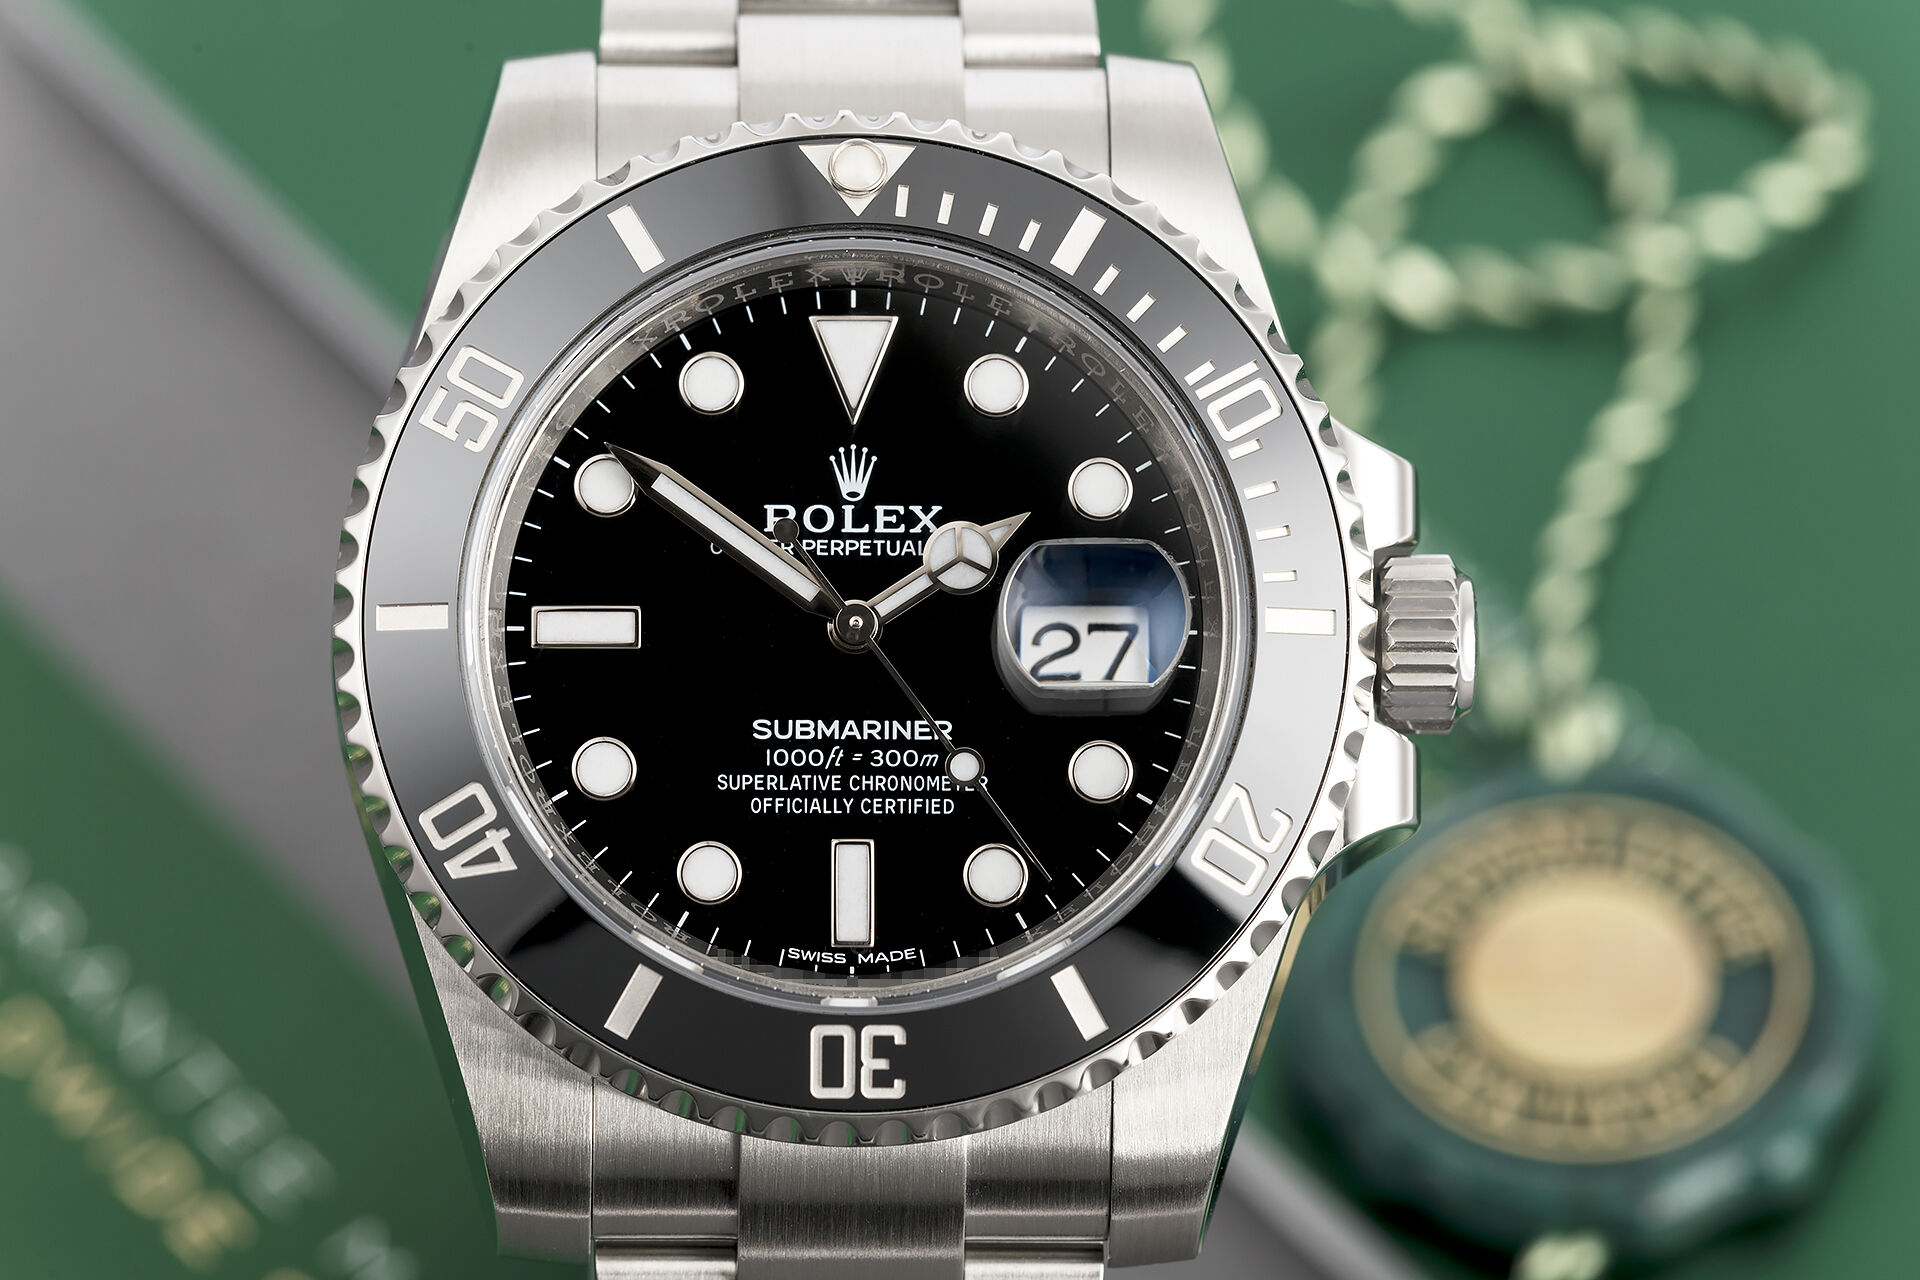 ref 116610LN | Under Rolex Warranty to 2024 | Rolex Submariner Date